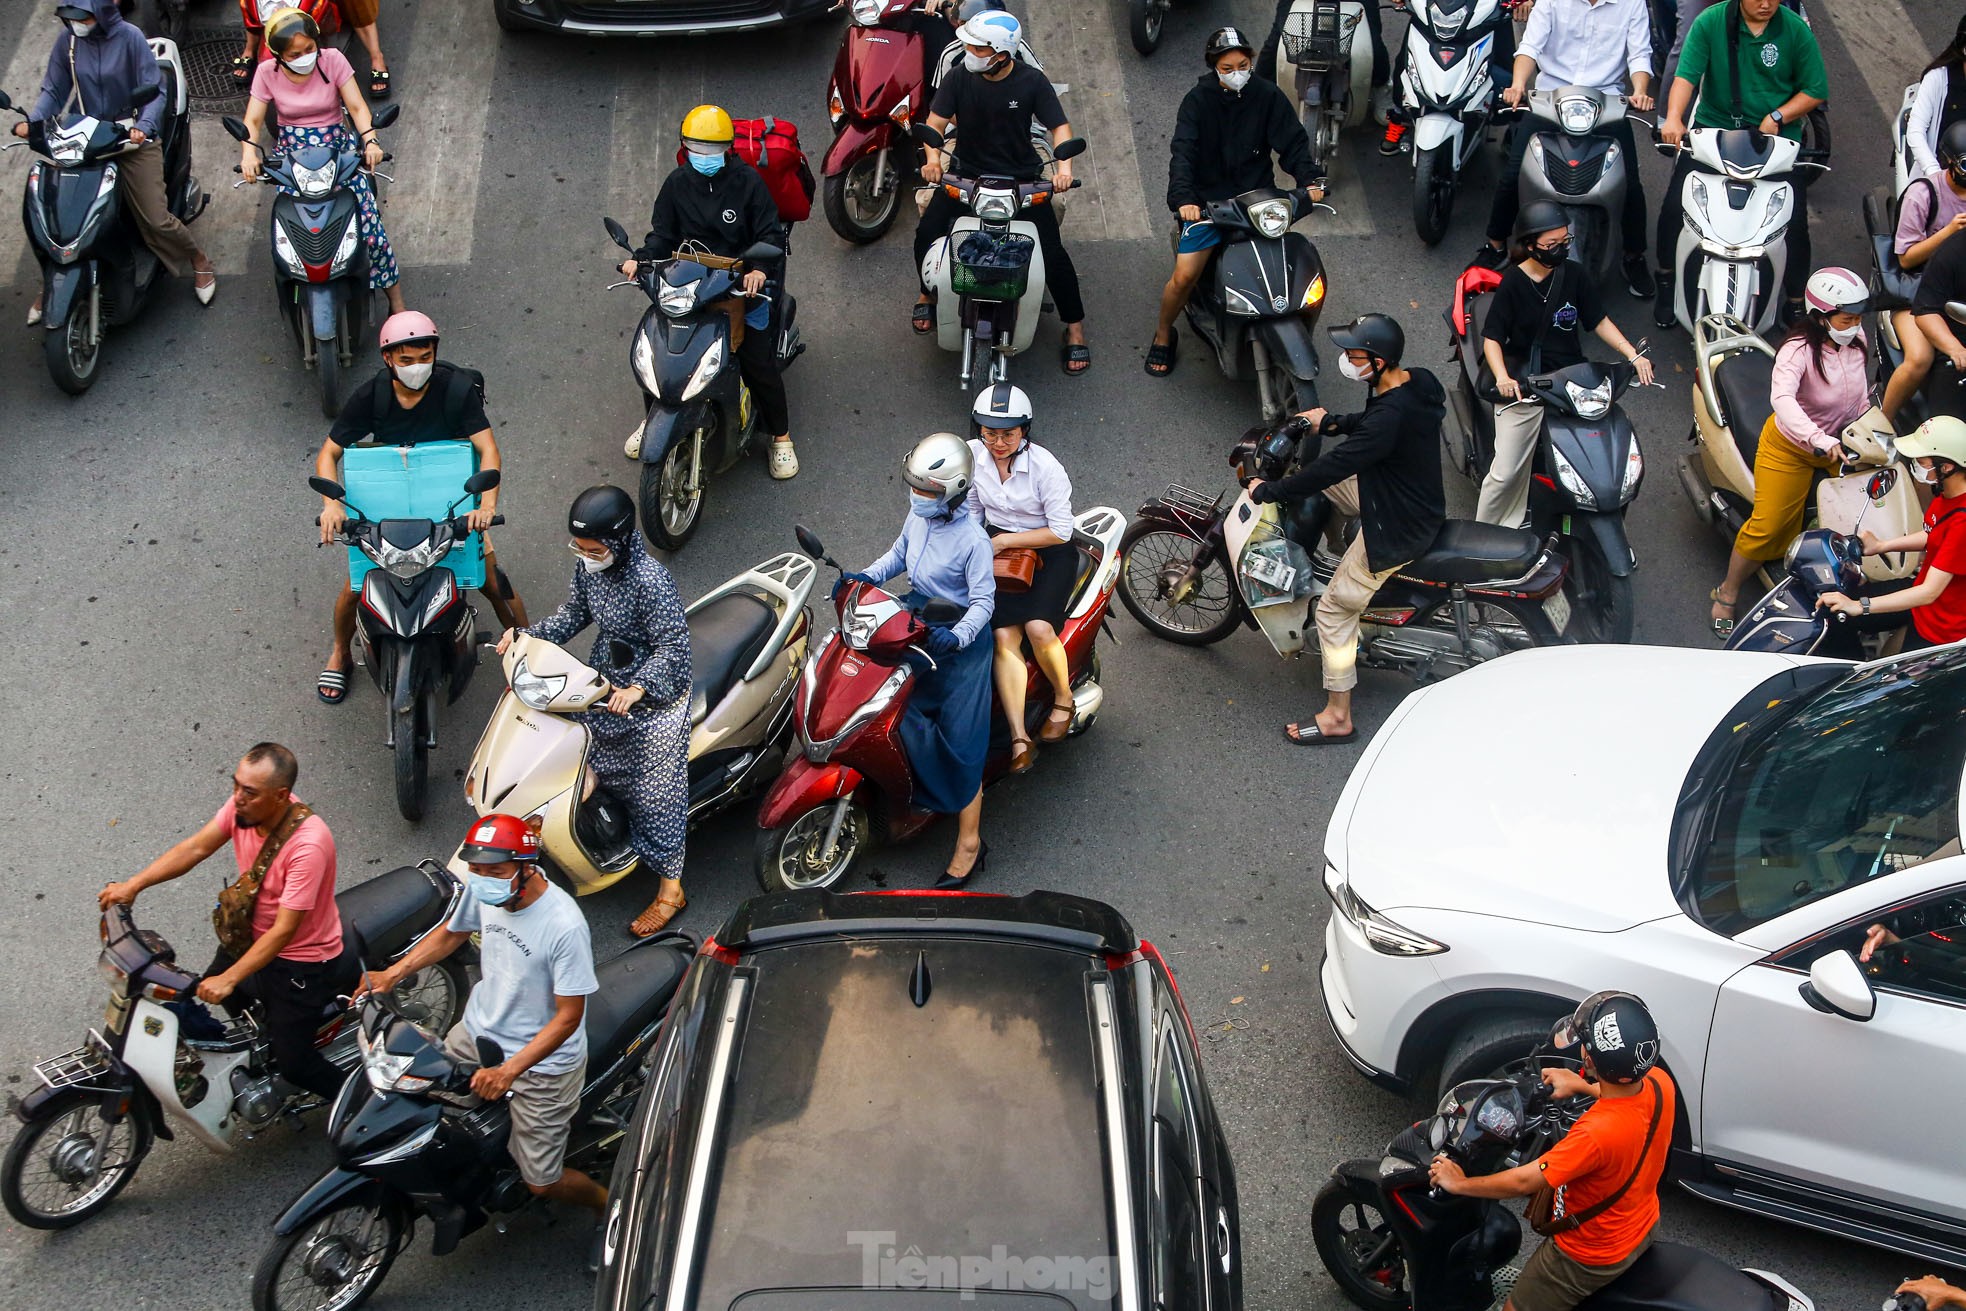 Xe buýt 'chôn chân', ô tô nhích từng chút giữa cơn tắc đường ở Hà Nội trước ngày nghỉ lễ ảnh 5